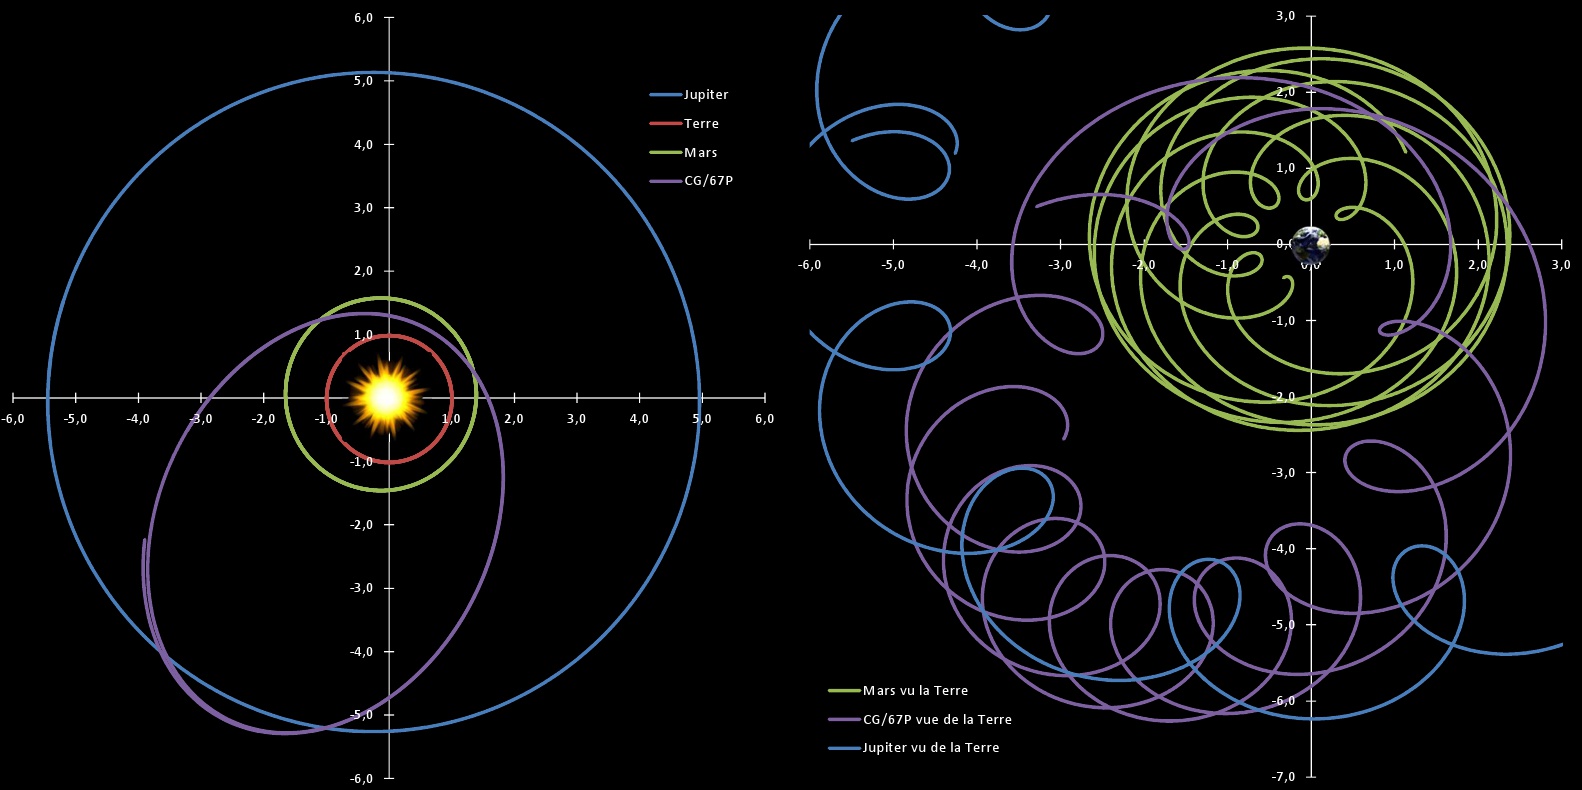 Mouvement des planètes et des comètes - Repère soleil et repère Terre - Mars - Jupiter - C-G/67P